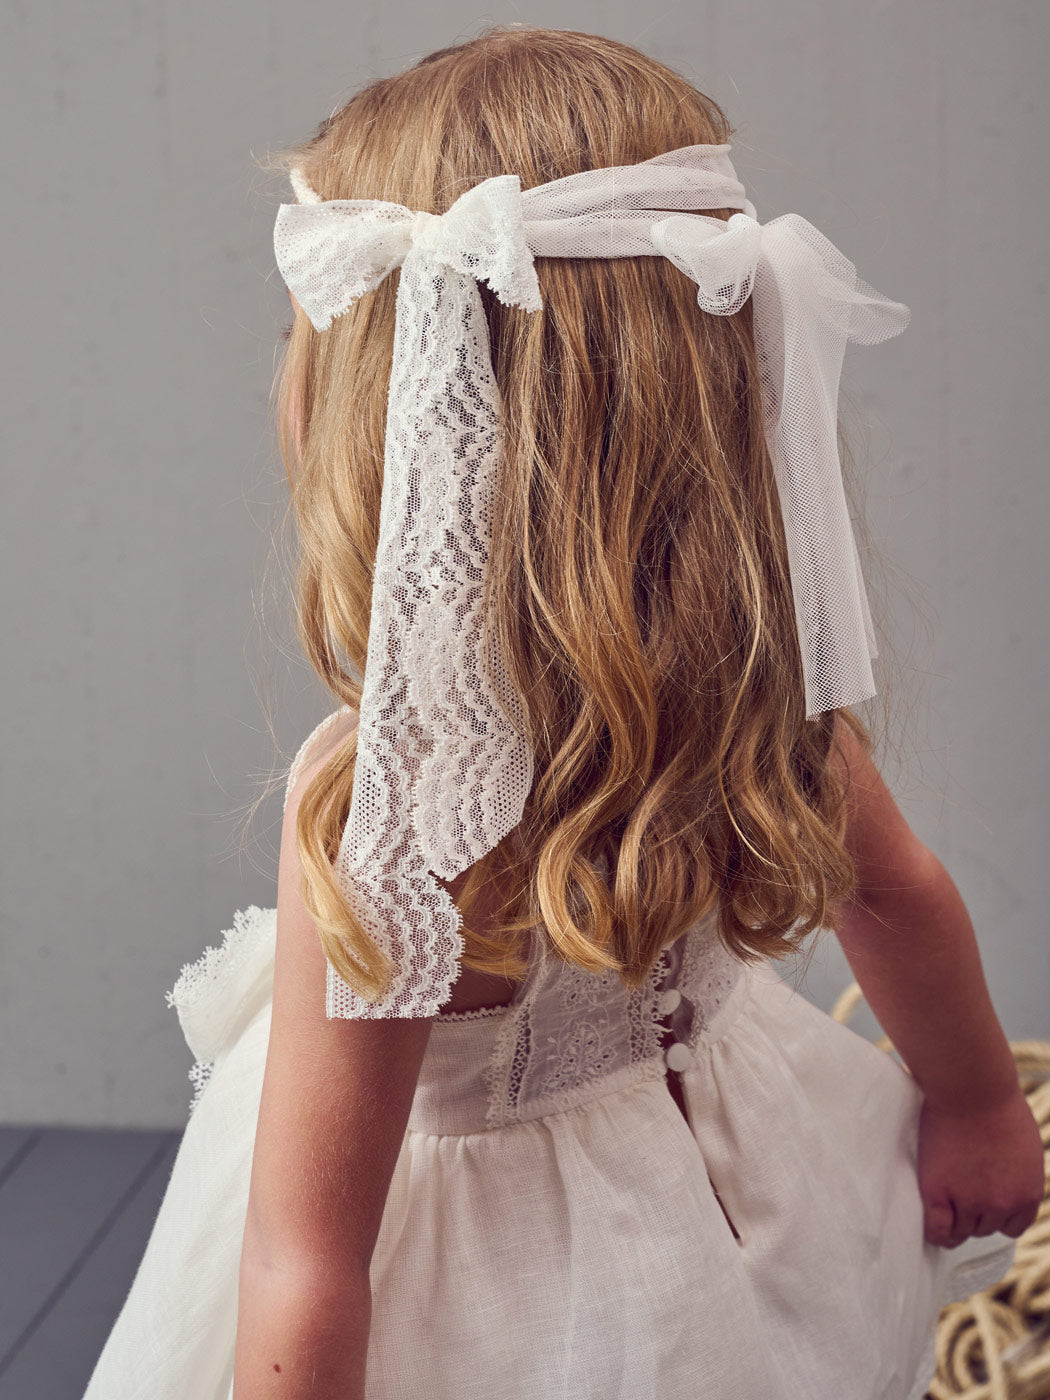 FRESHIA-Λινό βαπτιστικό φόρεμα με φιόγκο